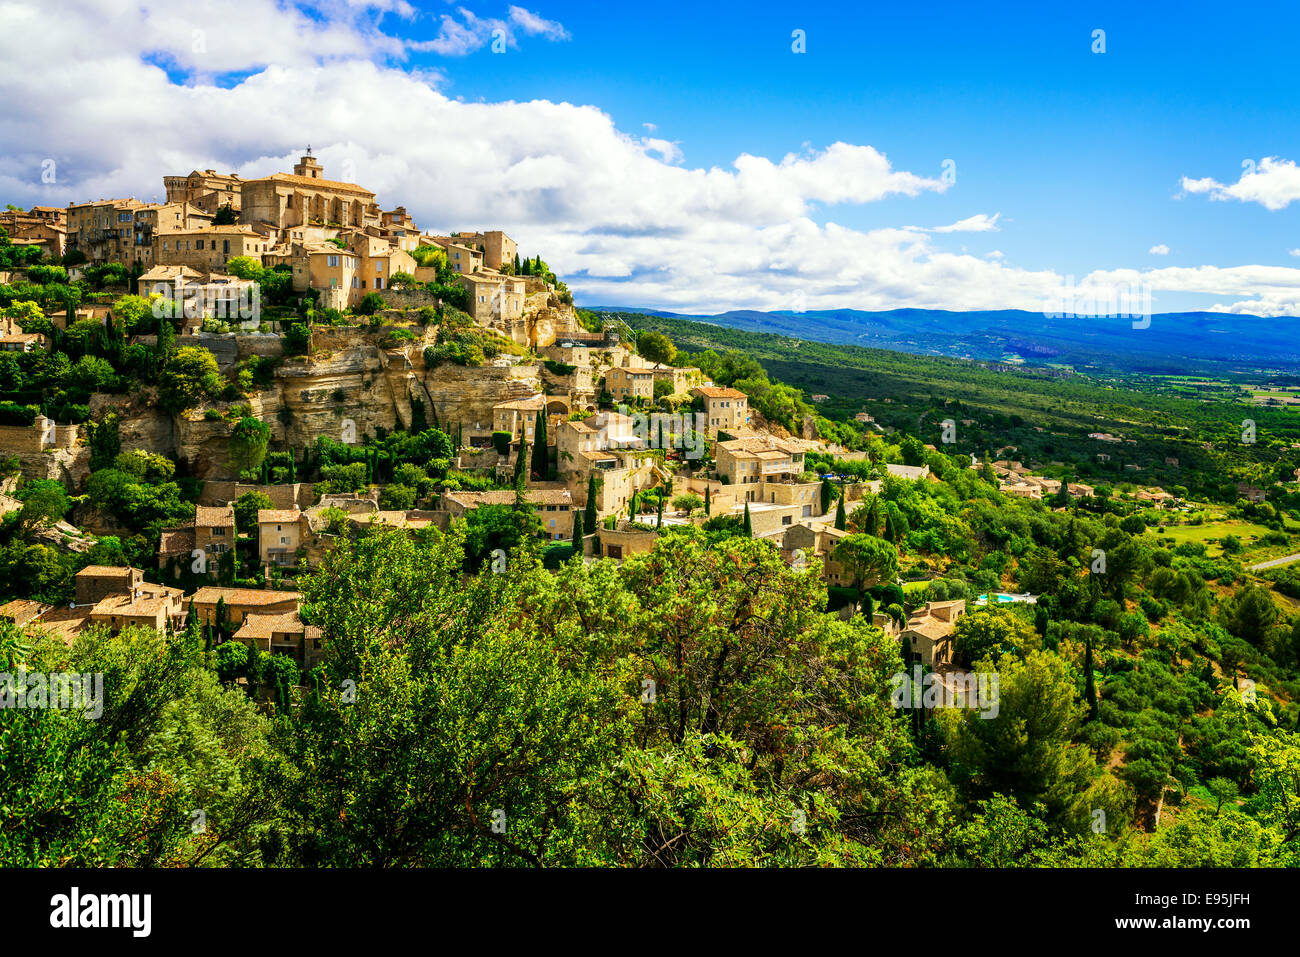 Gordes célèbre village médiéval dans le sud de la France Banque D'Images